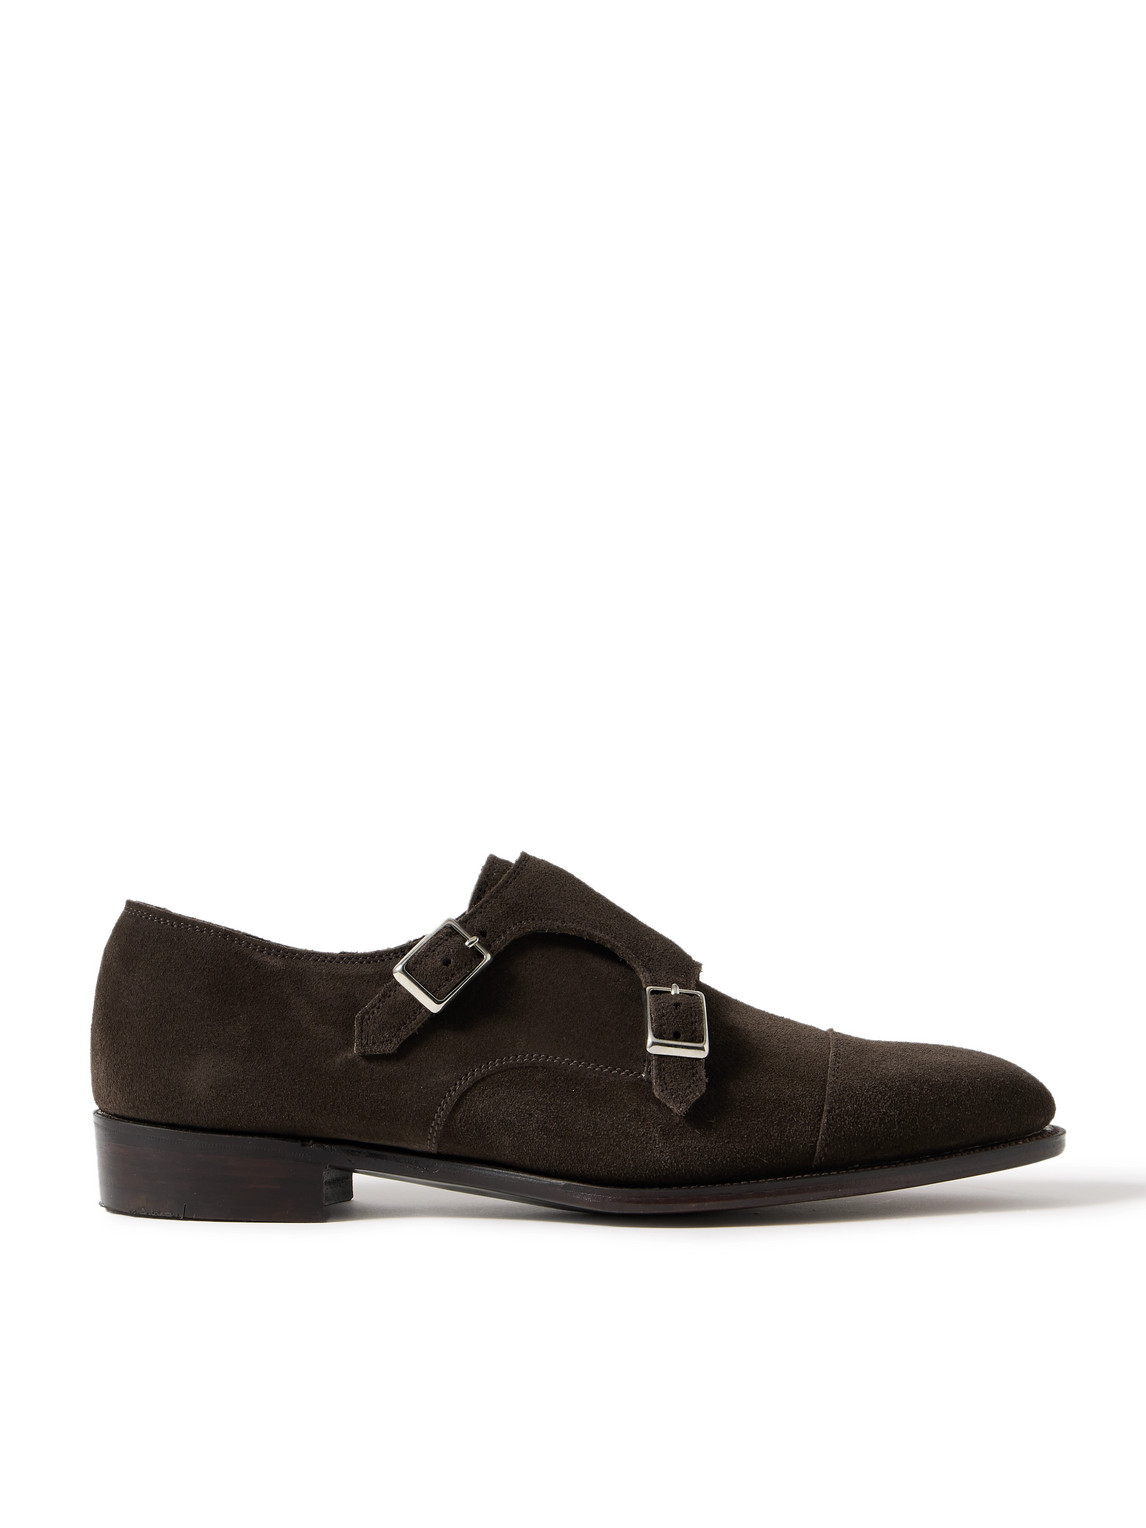 Thomas Cap-Toe Suede Monk-Strap Shoes